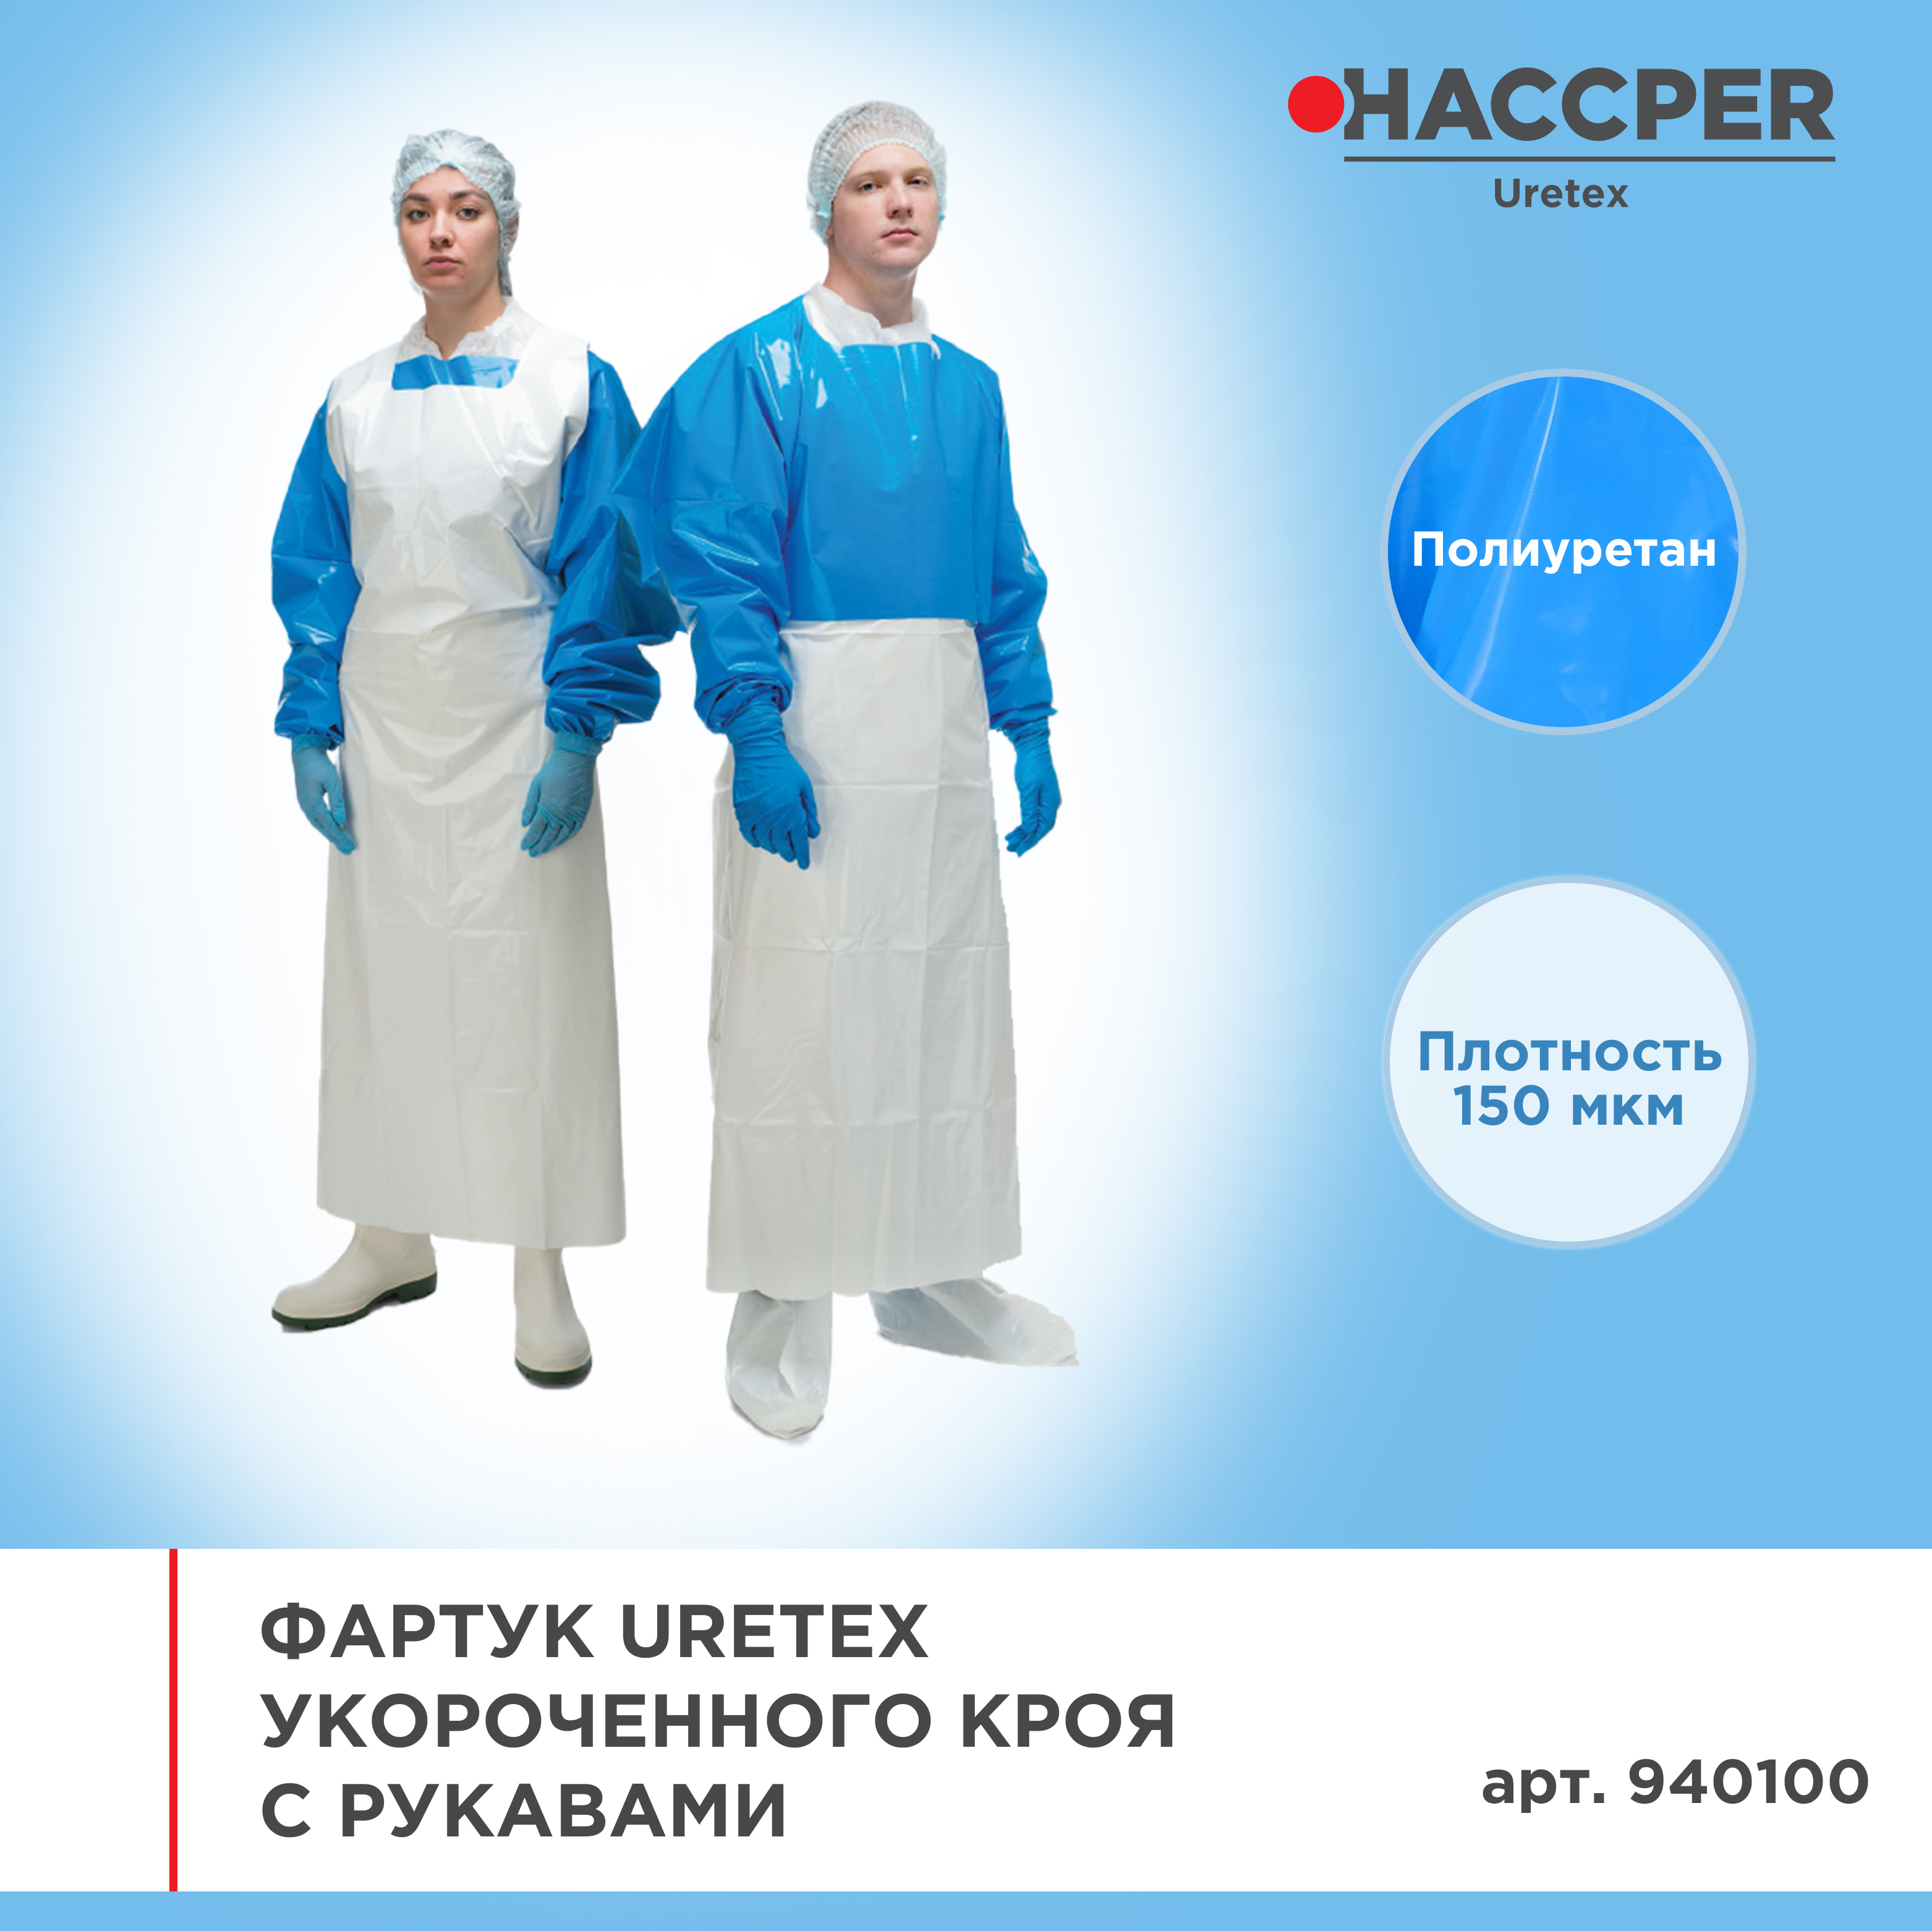 Фартук HACCPER  Uretex укороченного кроя с рукавами, 150 мкм, синий